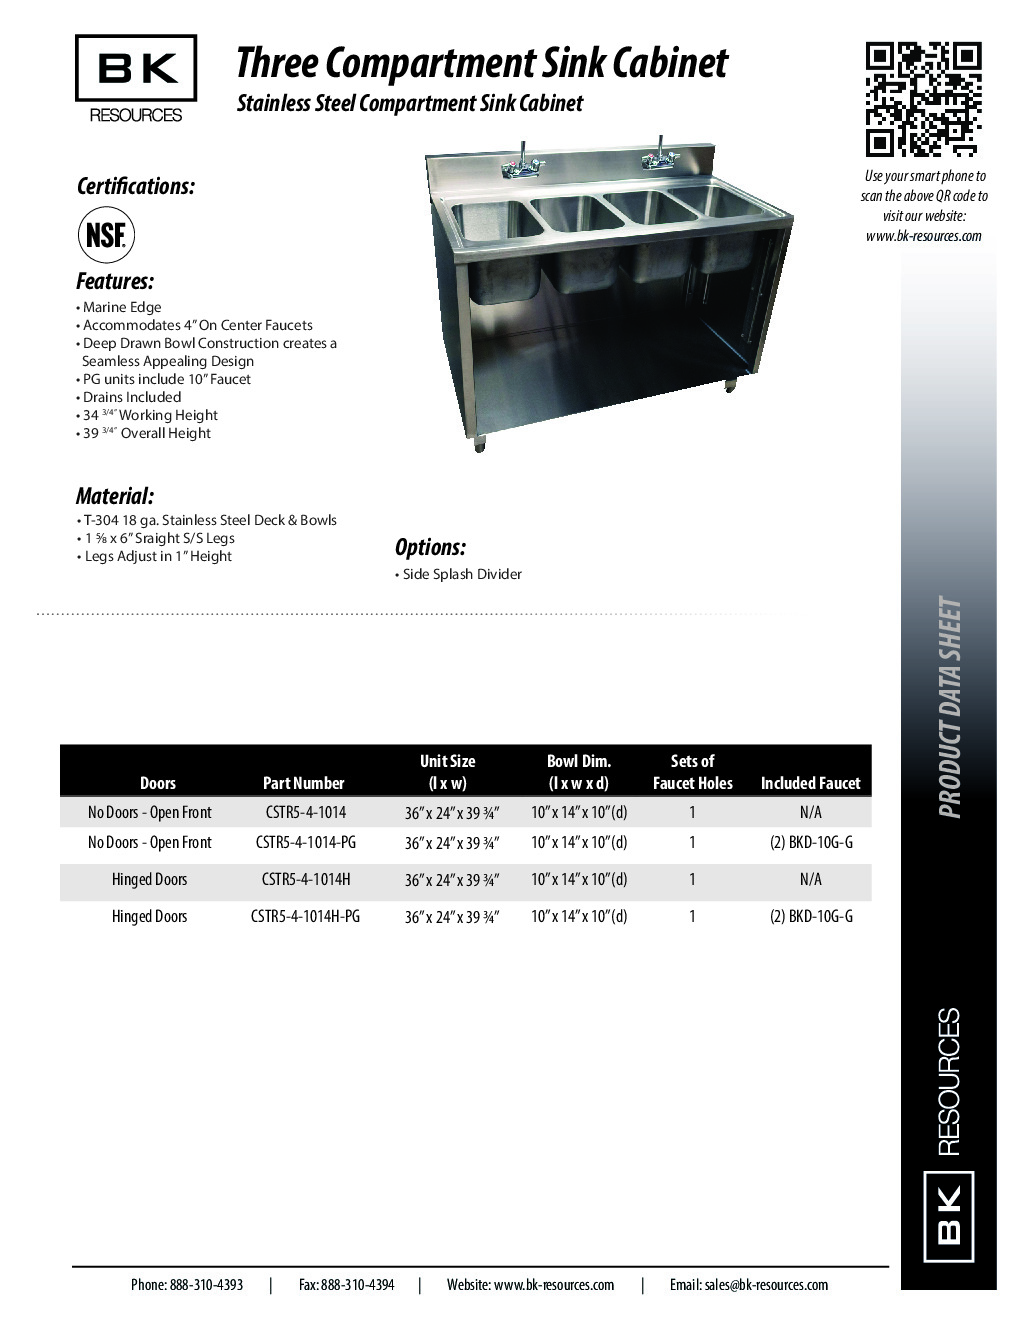 BK Resources CSTR5-4-1014H-PG (4) Four Compartment Sink